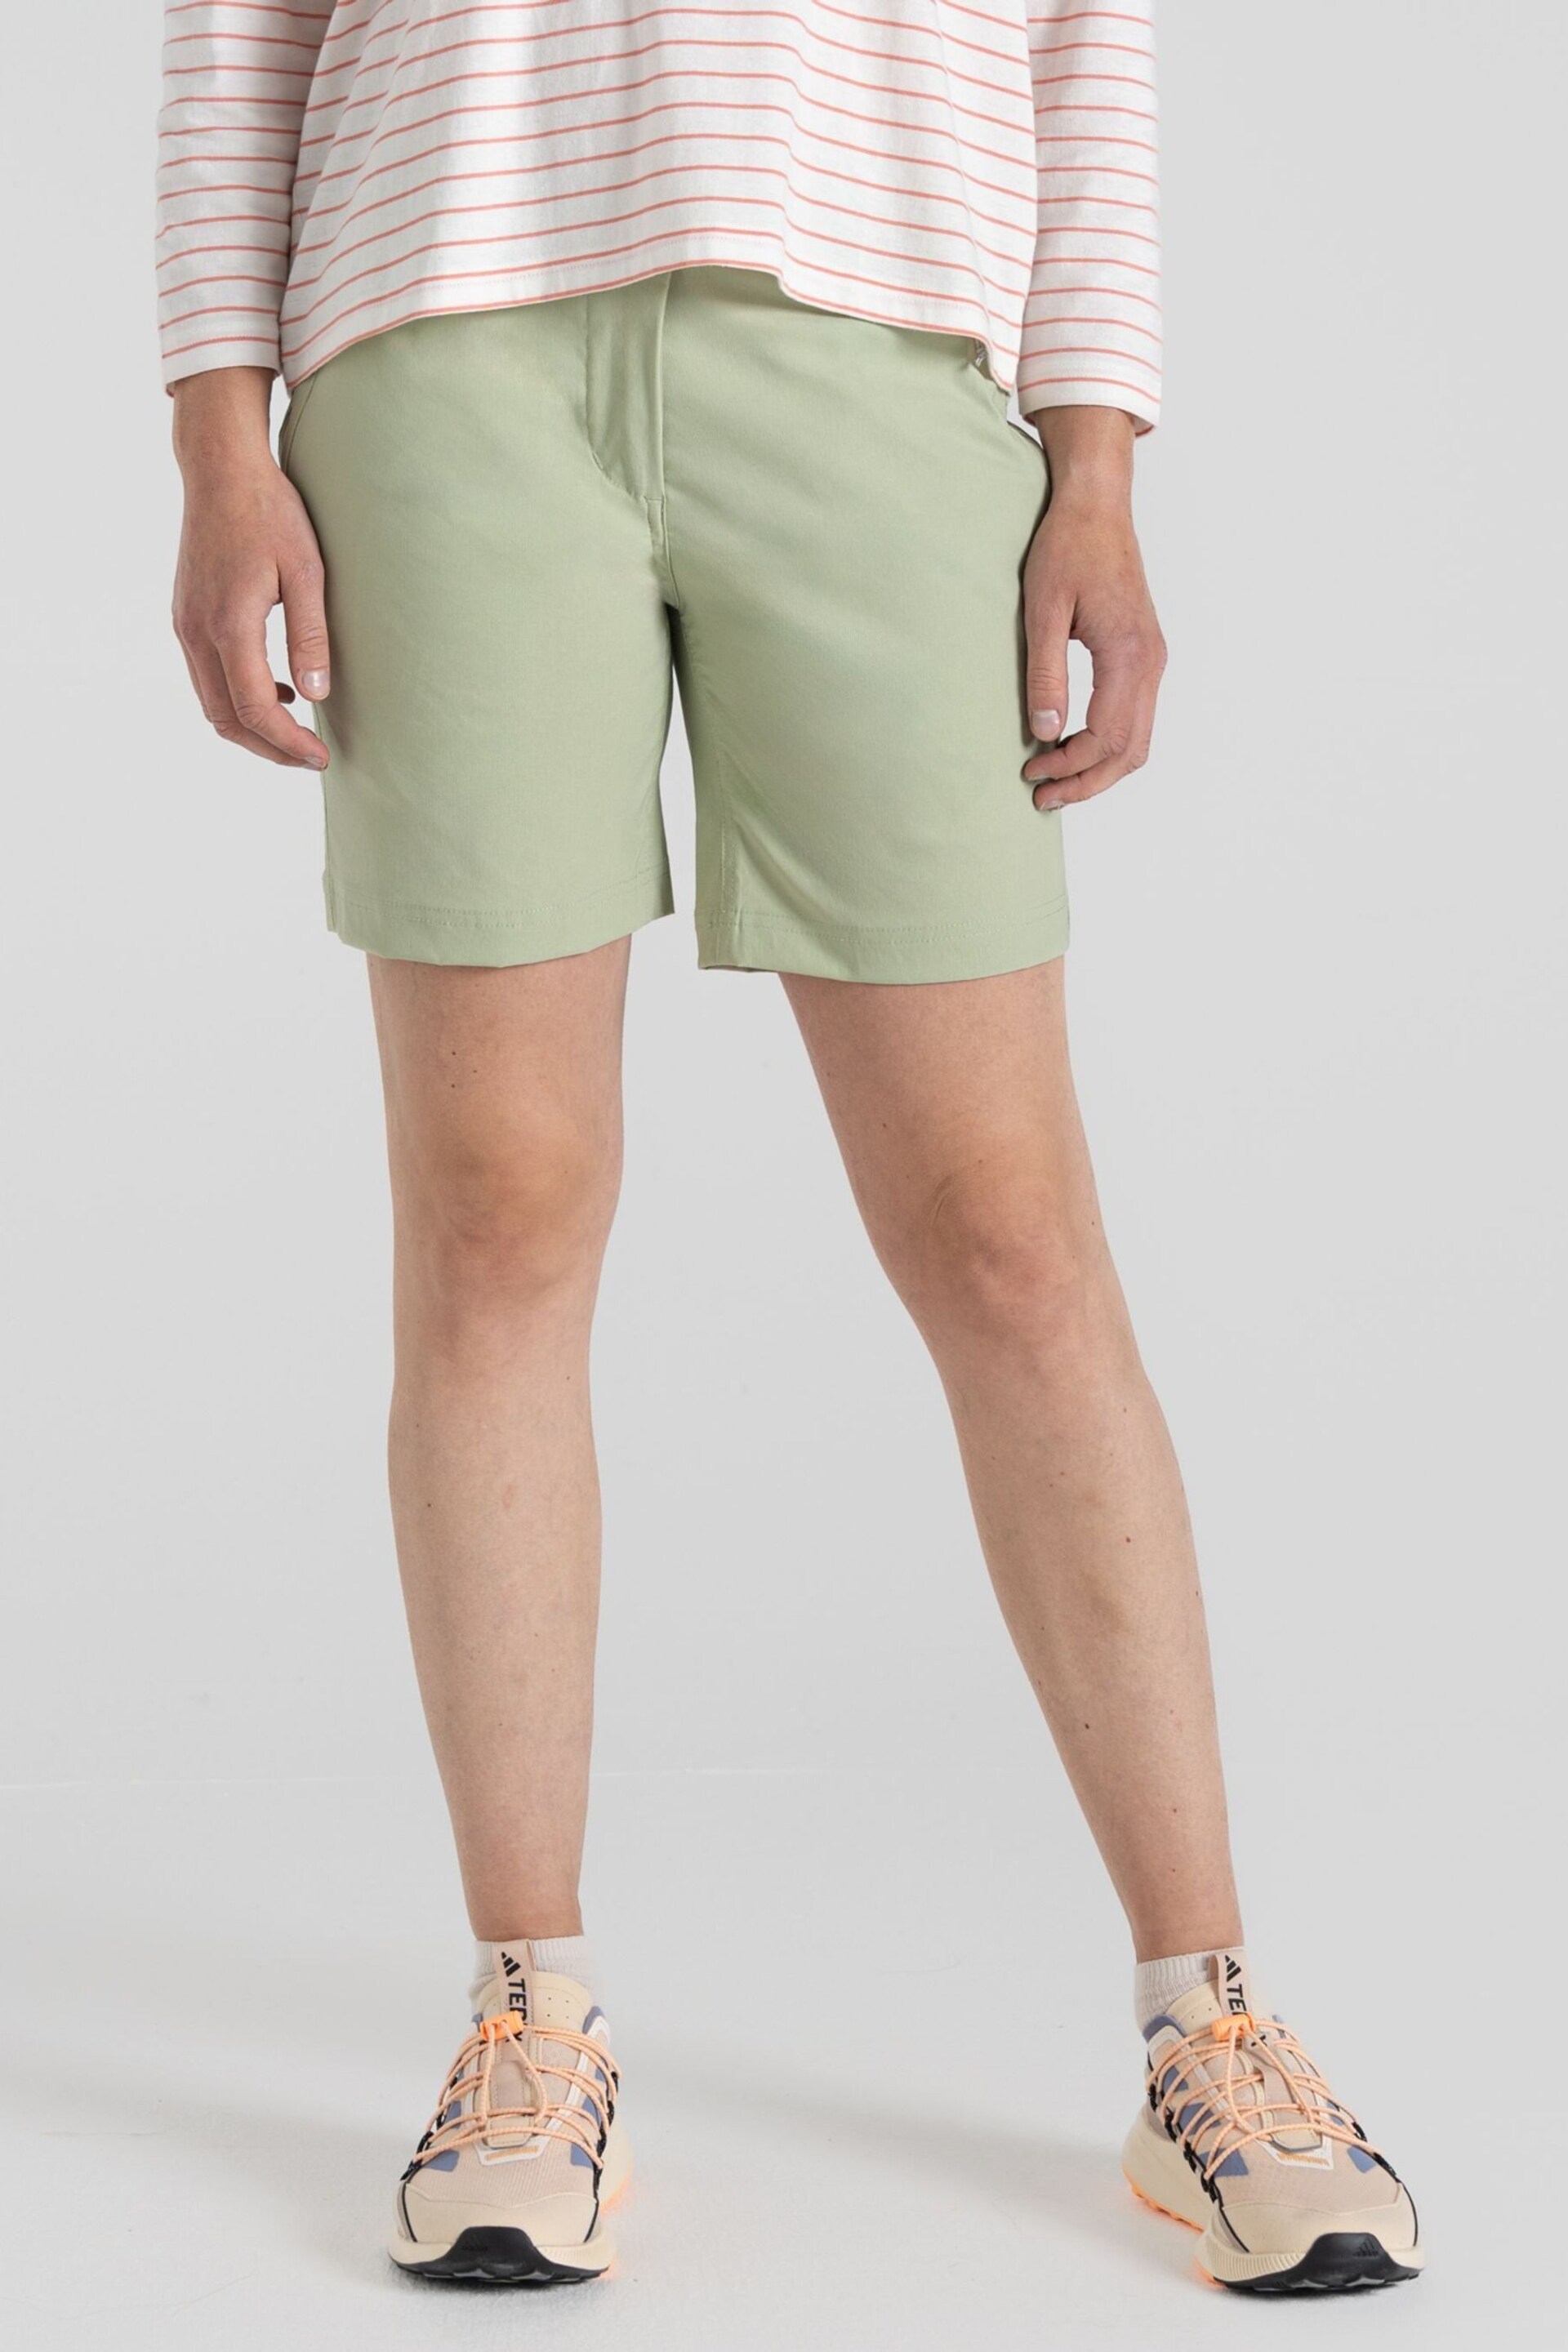 Craghoppers Green Kiwi Pro Shorts - Image 1 of 7